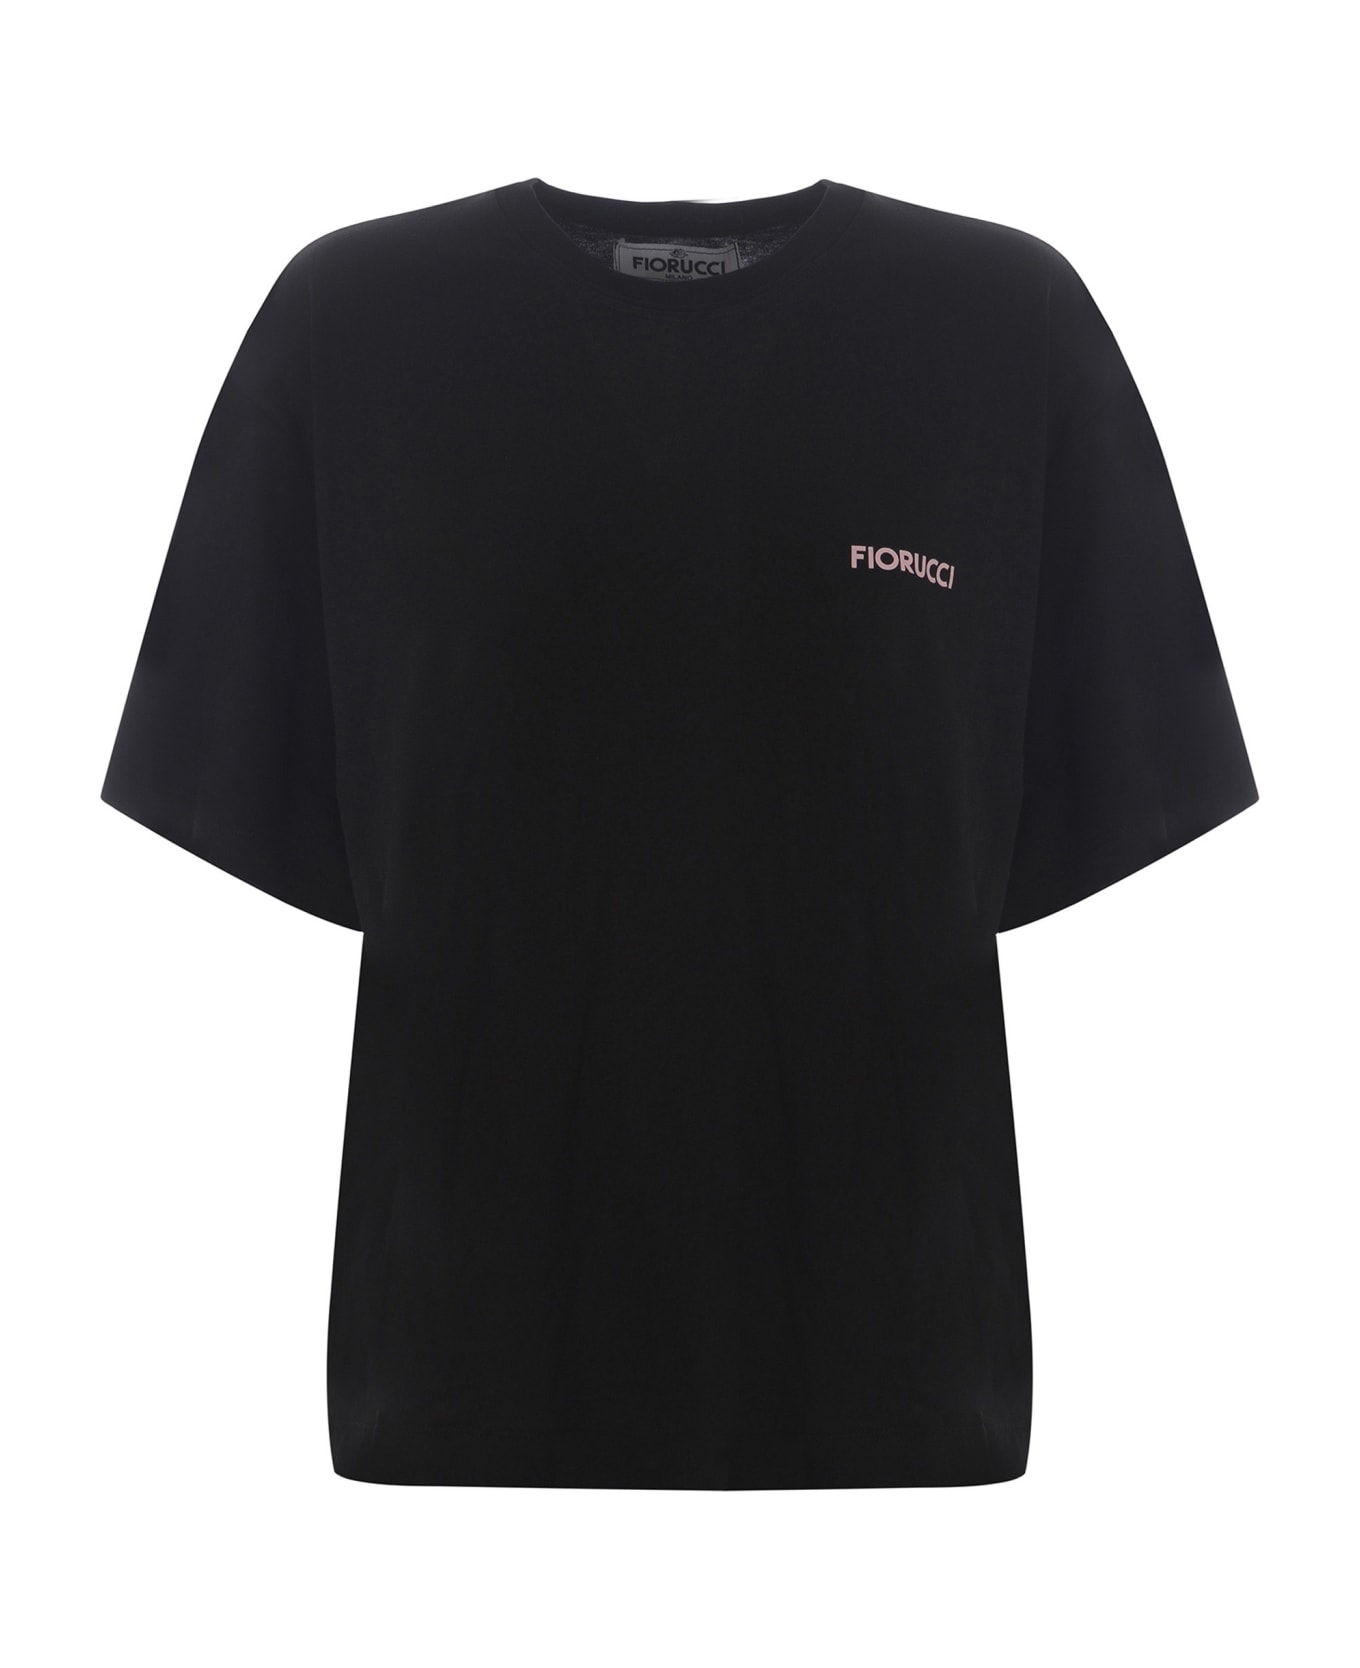 Fiorucci T-shirt Fiorucci Made Of Cotton - Nero Tシャツ